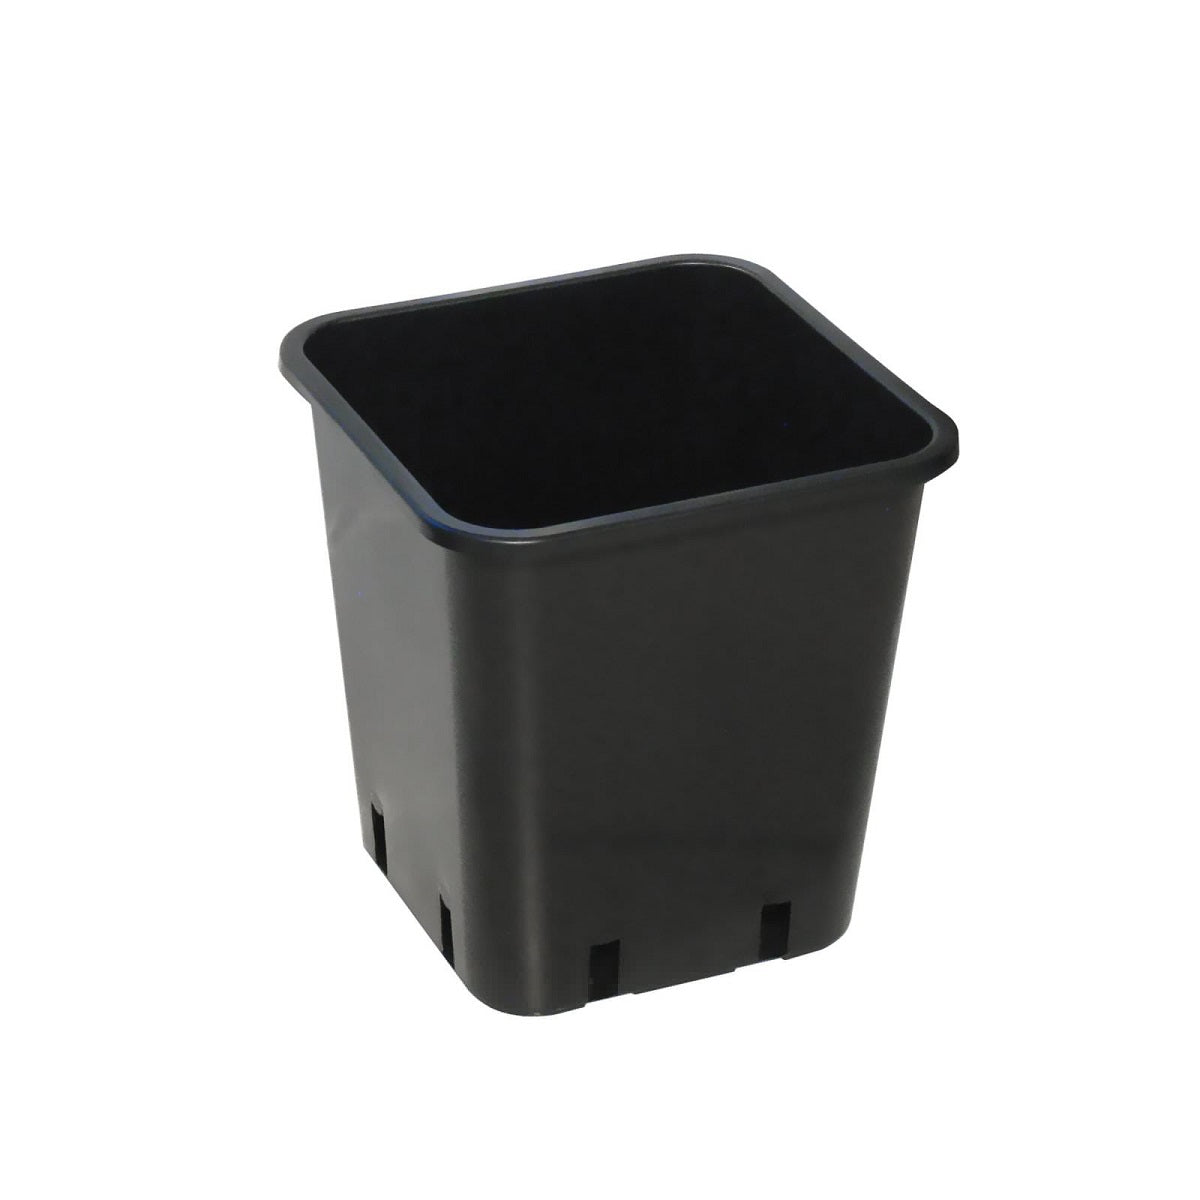 Le pot pour culture indoor et outdoor de 11L en plastique noir carré